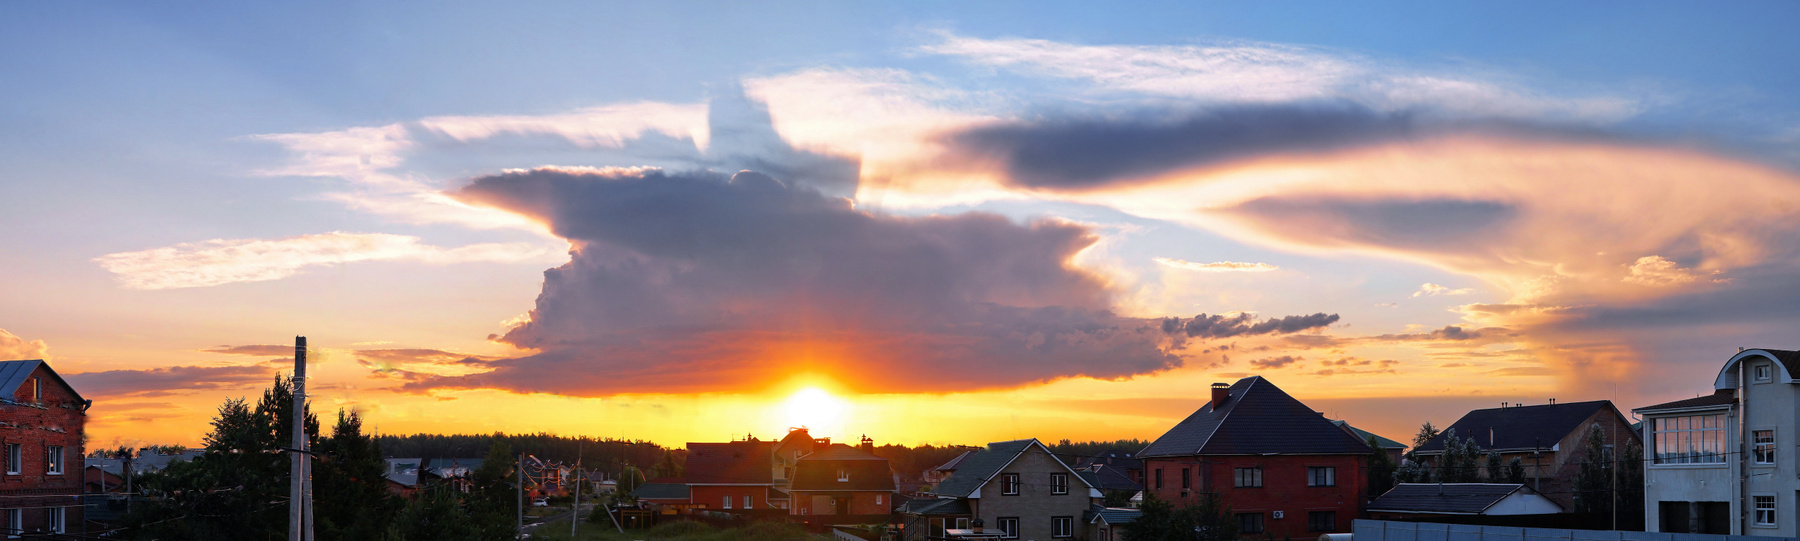 Небесная картина  на даче 12.06.20 омск дача небесное явление грозовой фронт супер-ячейка тень панорама kamlan 50mm F1.1 mark II